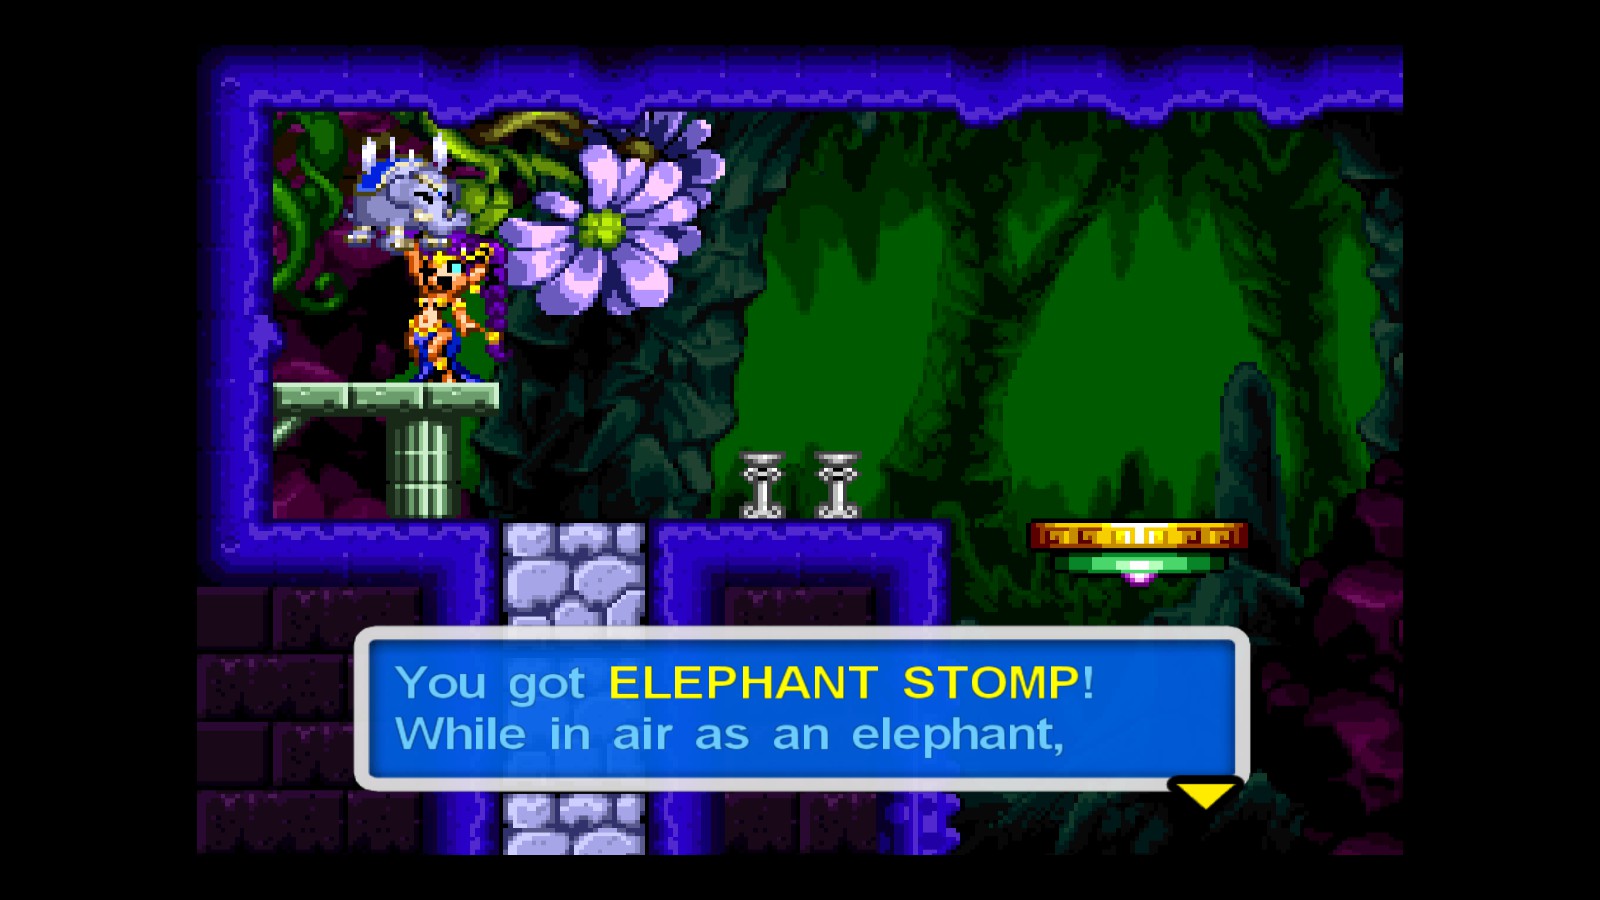 Shantae: Risky's Revenge - Director's Cut Complete Gameplay Tutorial + Achievements - Story items I - 2DA726E